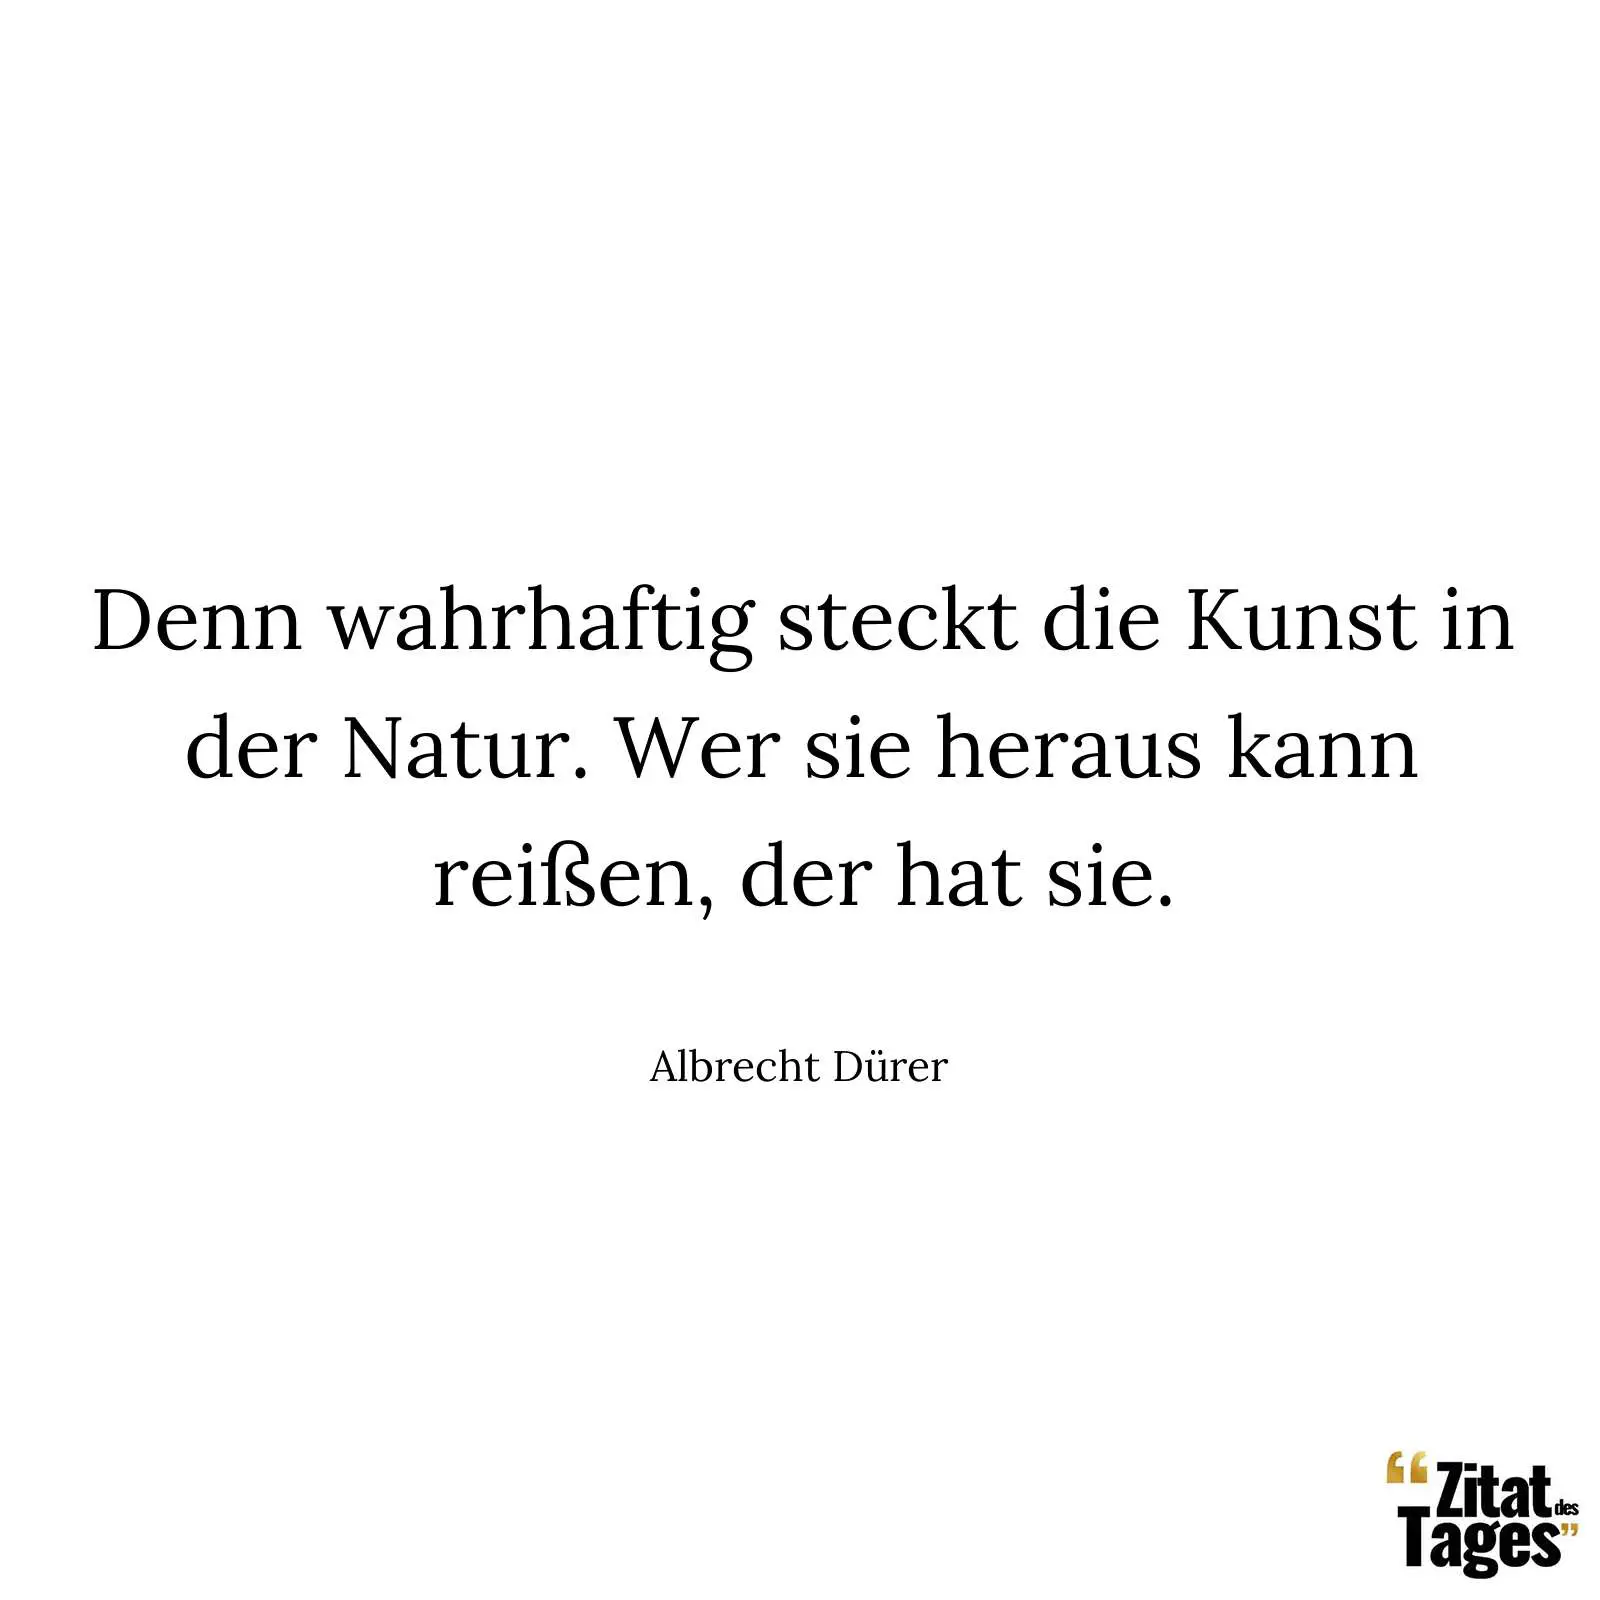 Denn wahrhaftig steckt die Kunst in der Natur.Wer sie heraus kann reissen, der hat sie. - Albrecht Dürer